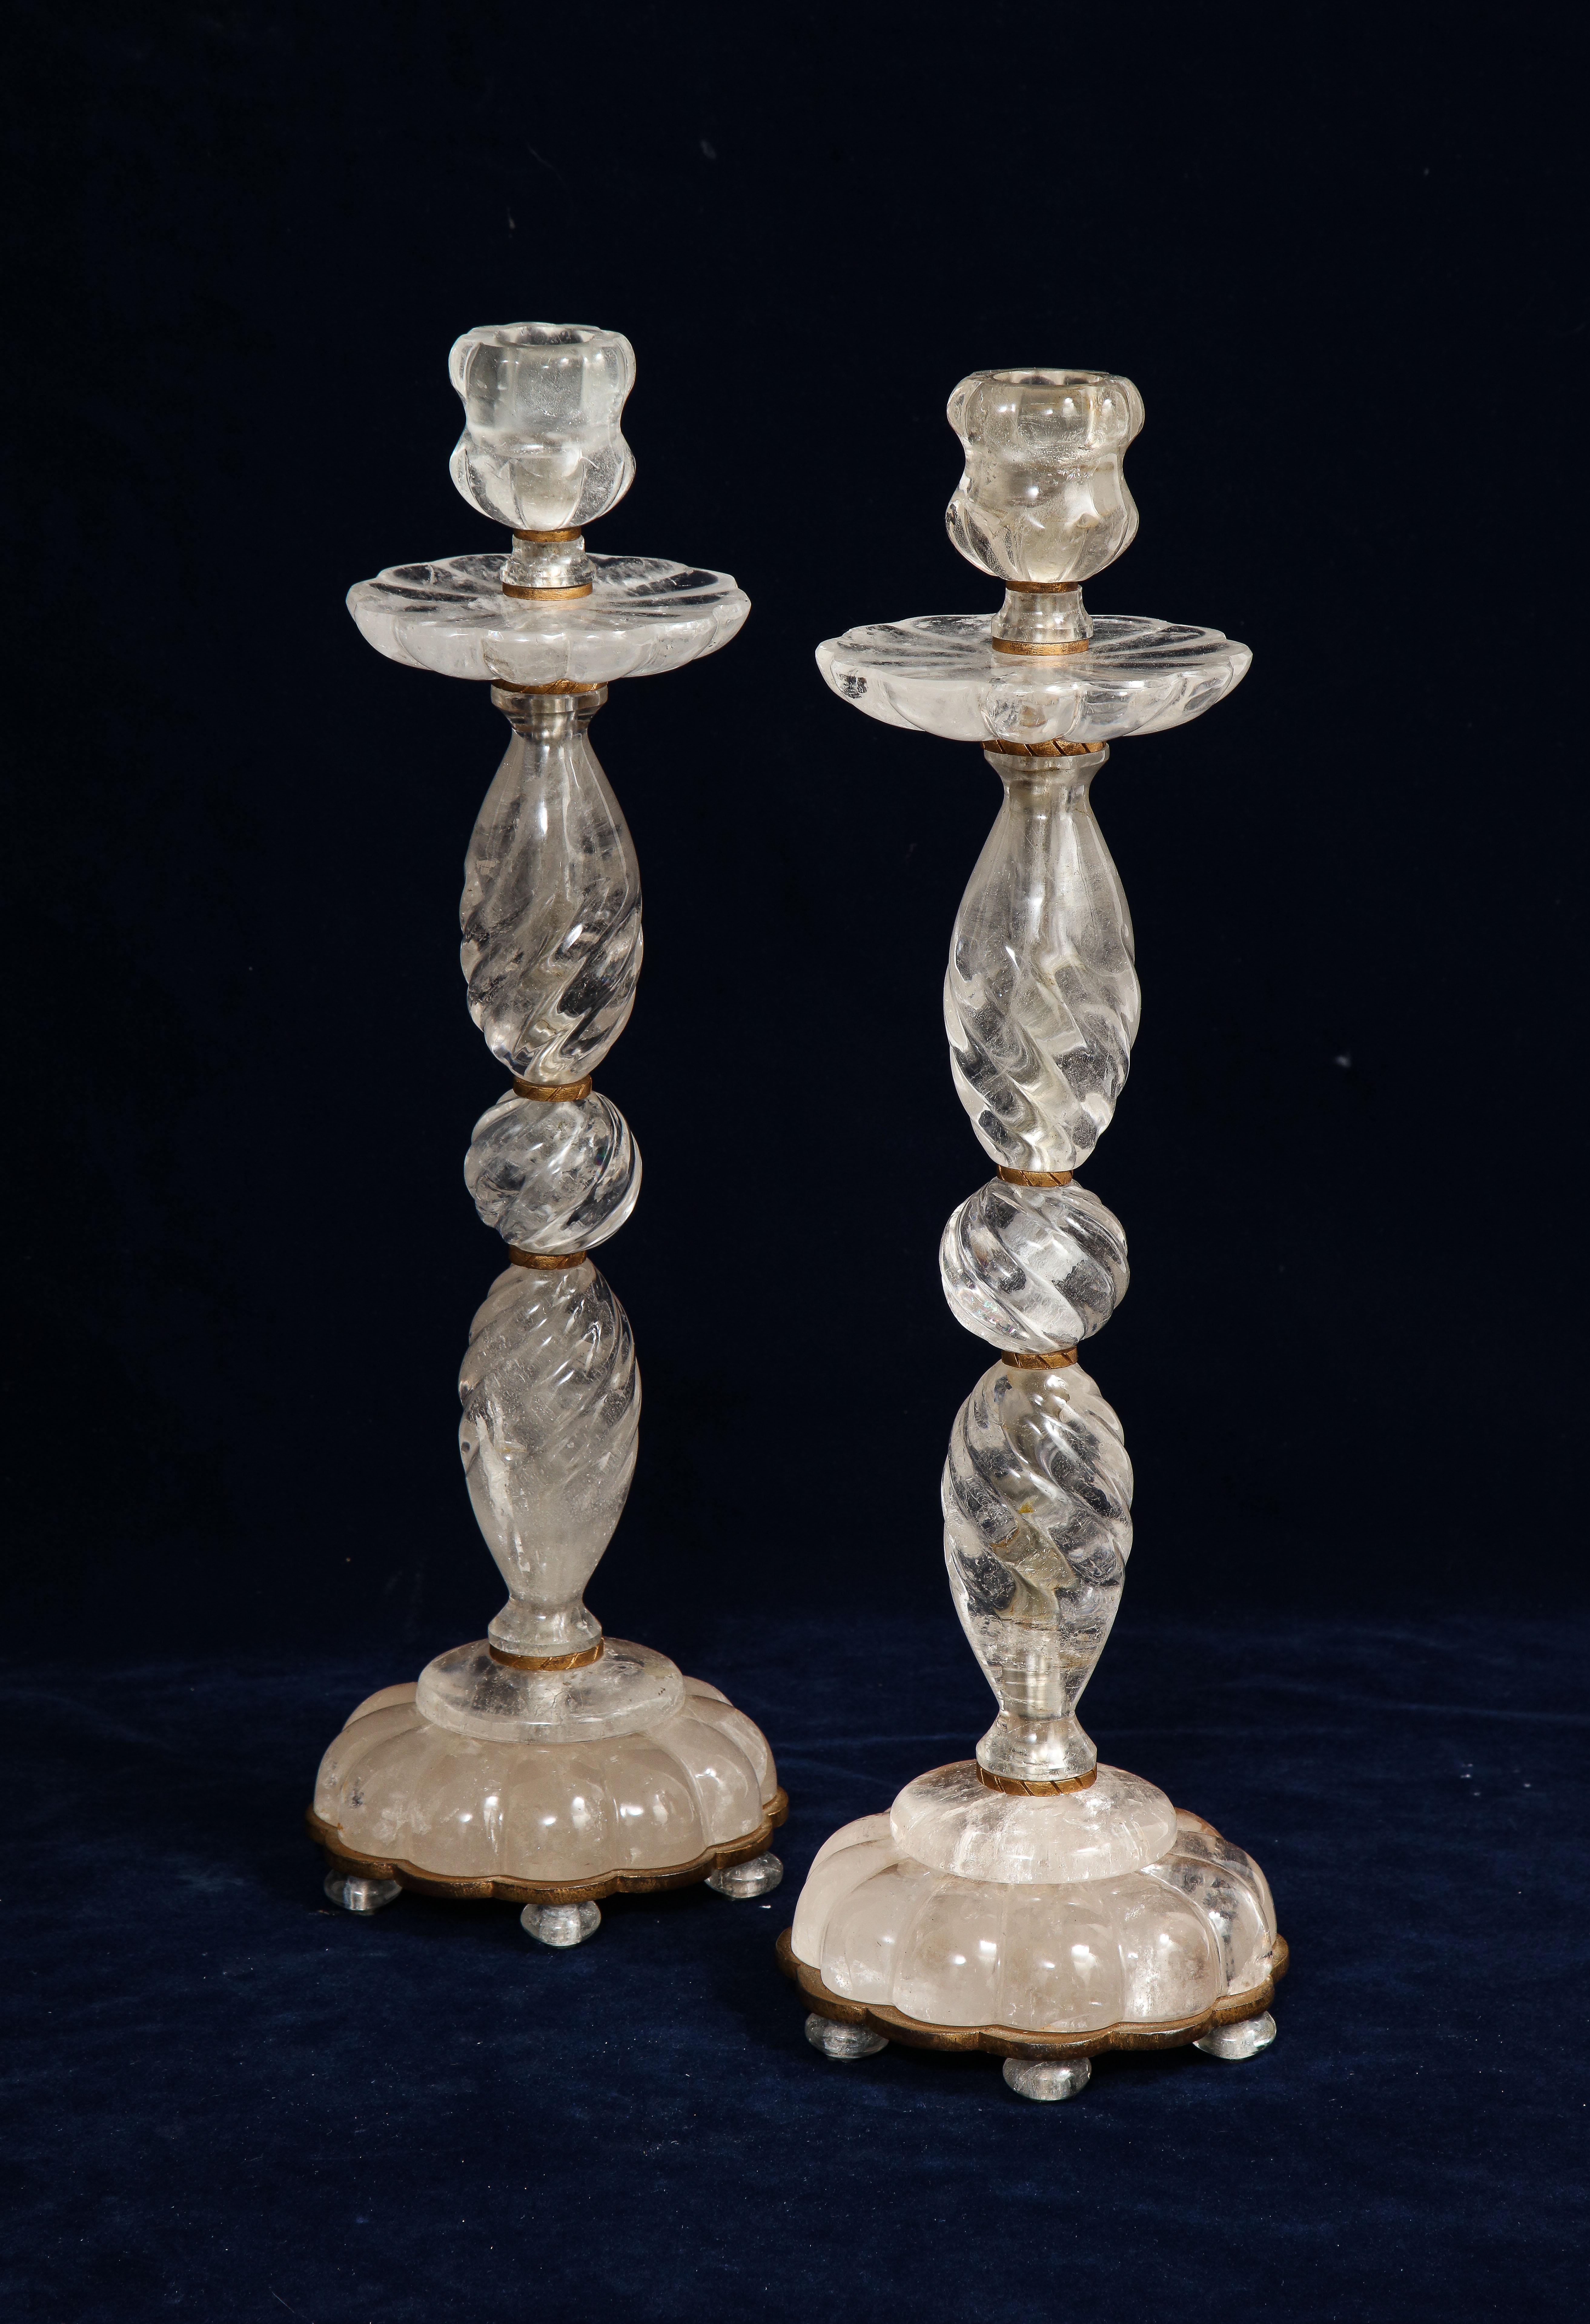 Une impressionnante paire de chandeliers en cristal de roche de style Louis XVI français du milieu du siècle, sculptés et polis à la main sur des montures en bronze patiné. Chaque chandelier est magnifique avec de multiples sections de cristal de